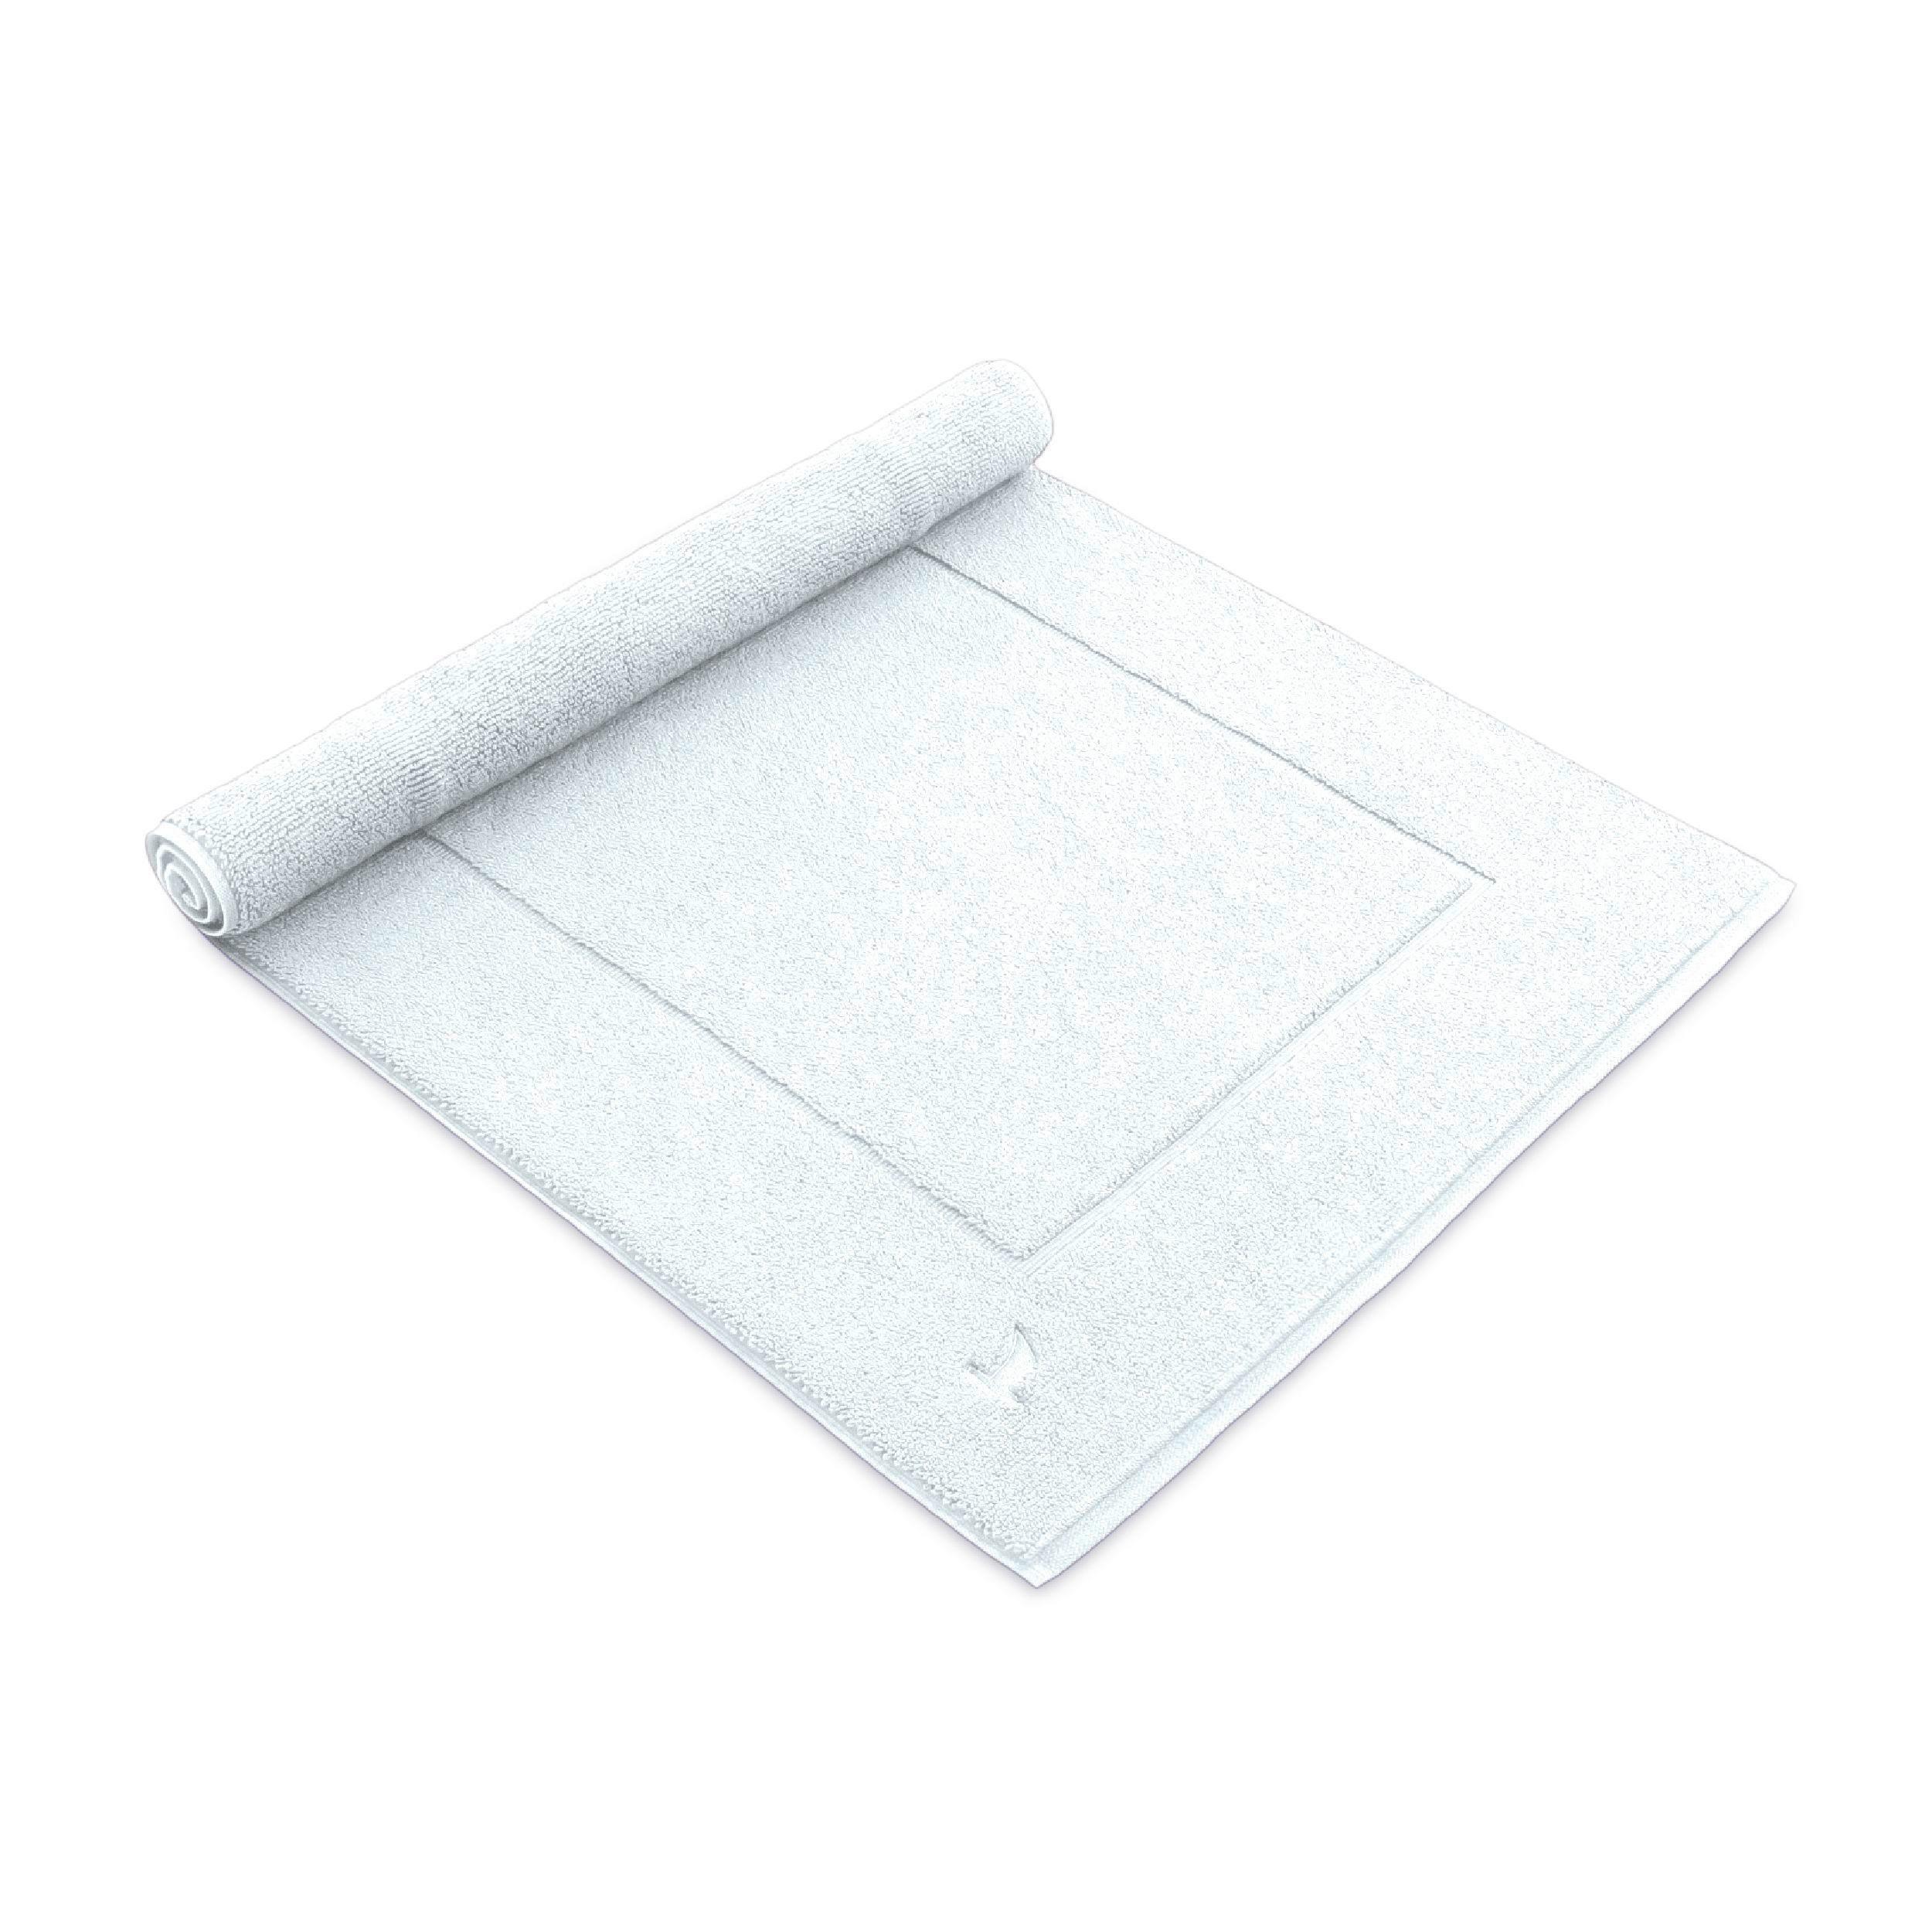 Badematte Snow Weiß 60x100 cm - Weiß, Basics, Textil (60/100cm) - Moeve